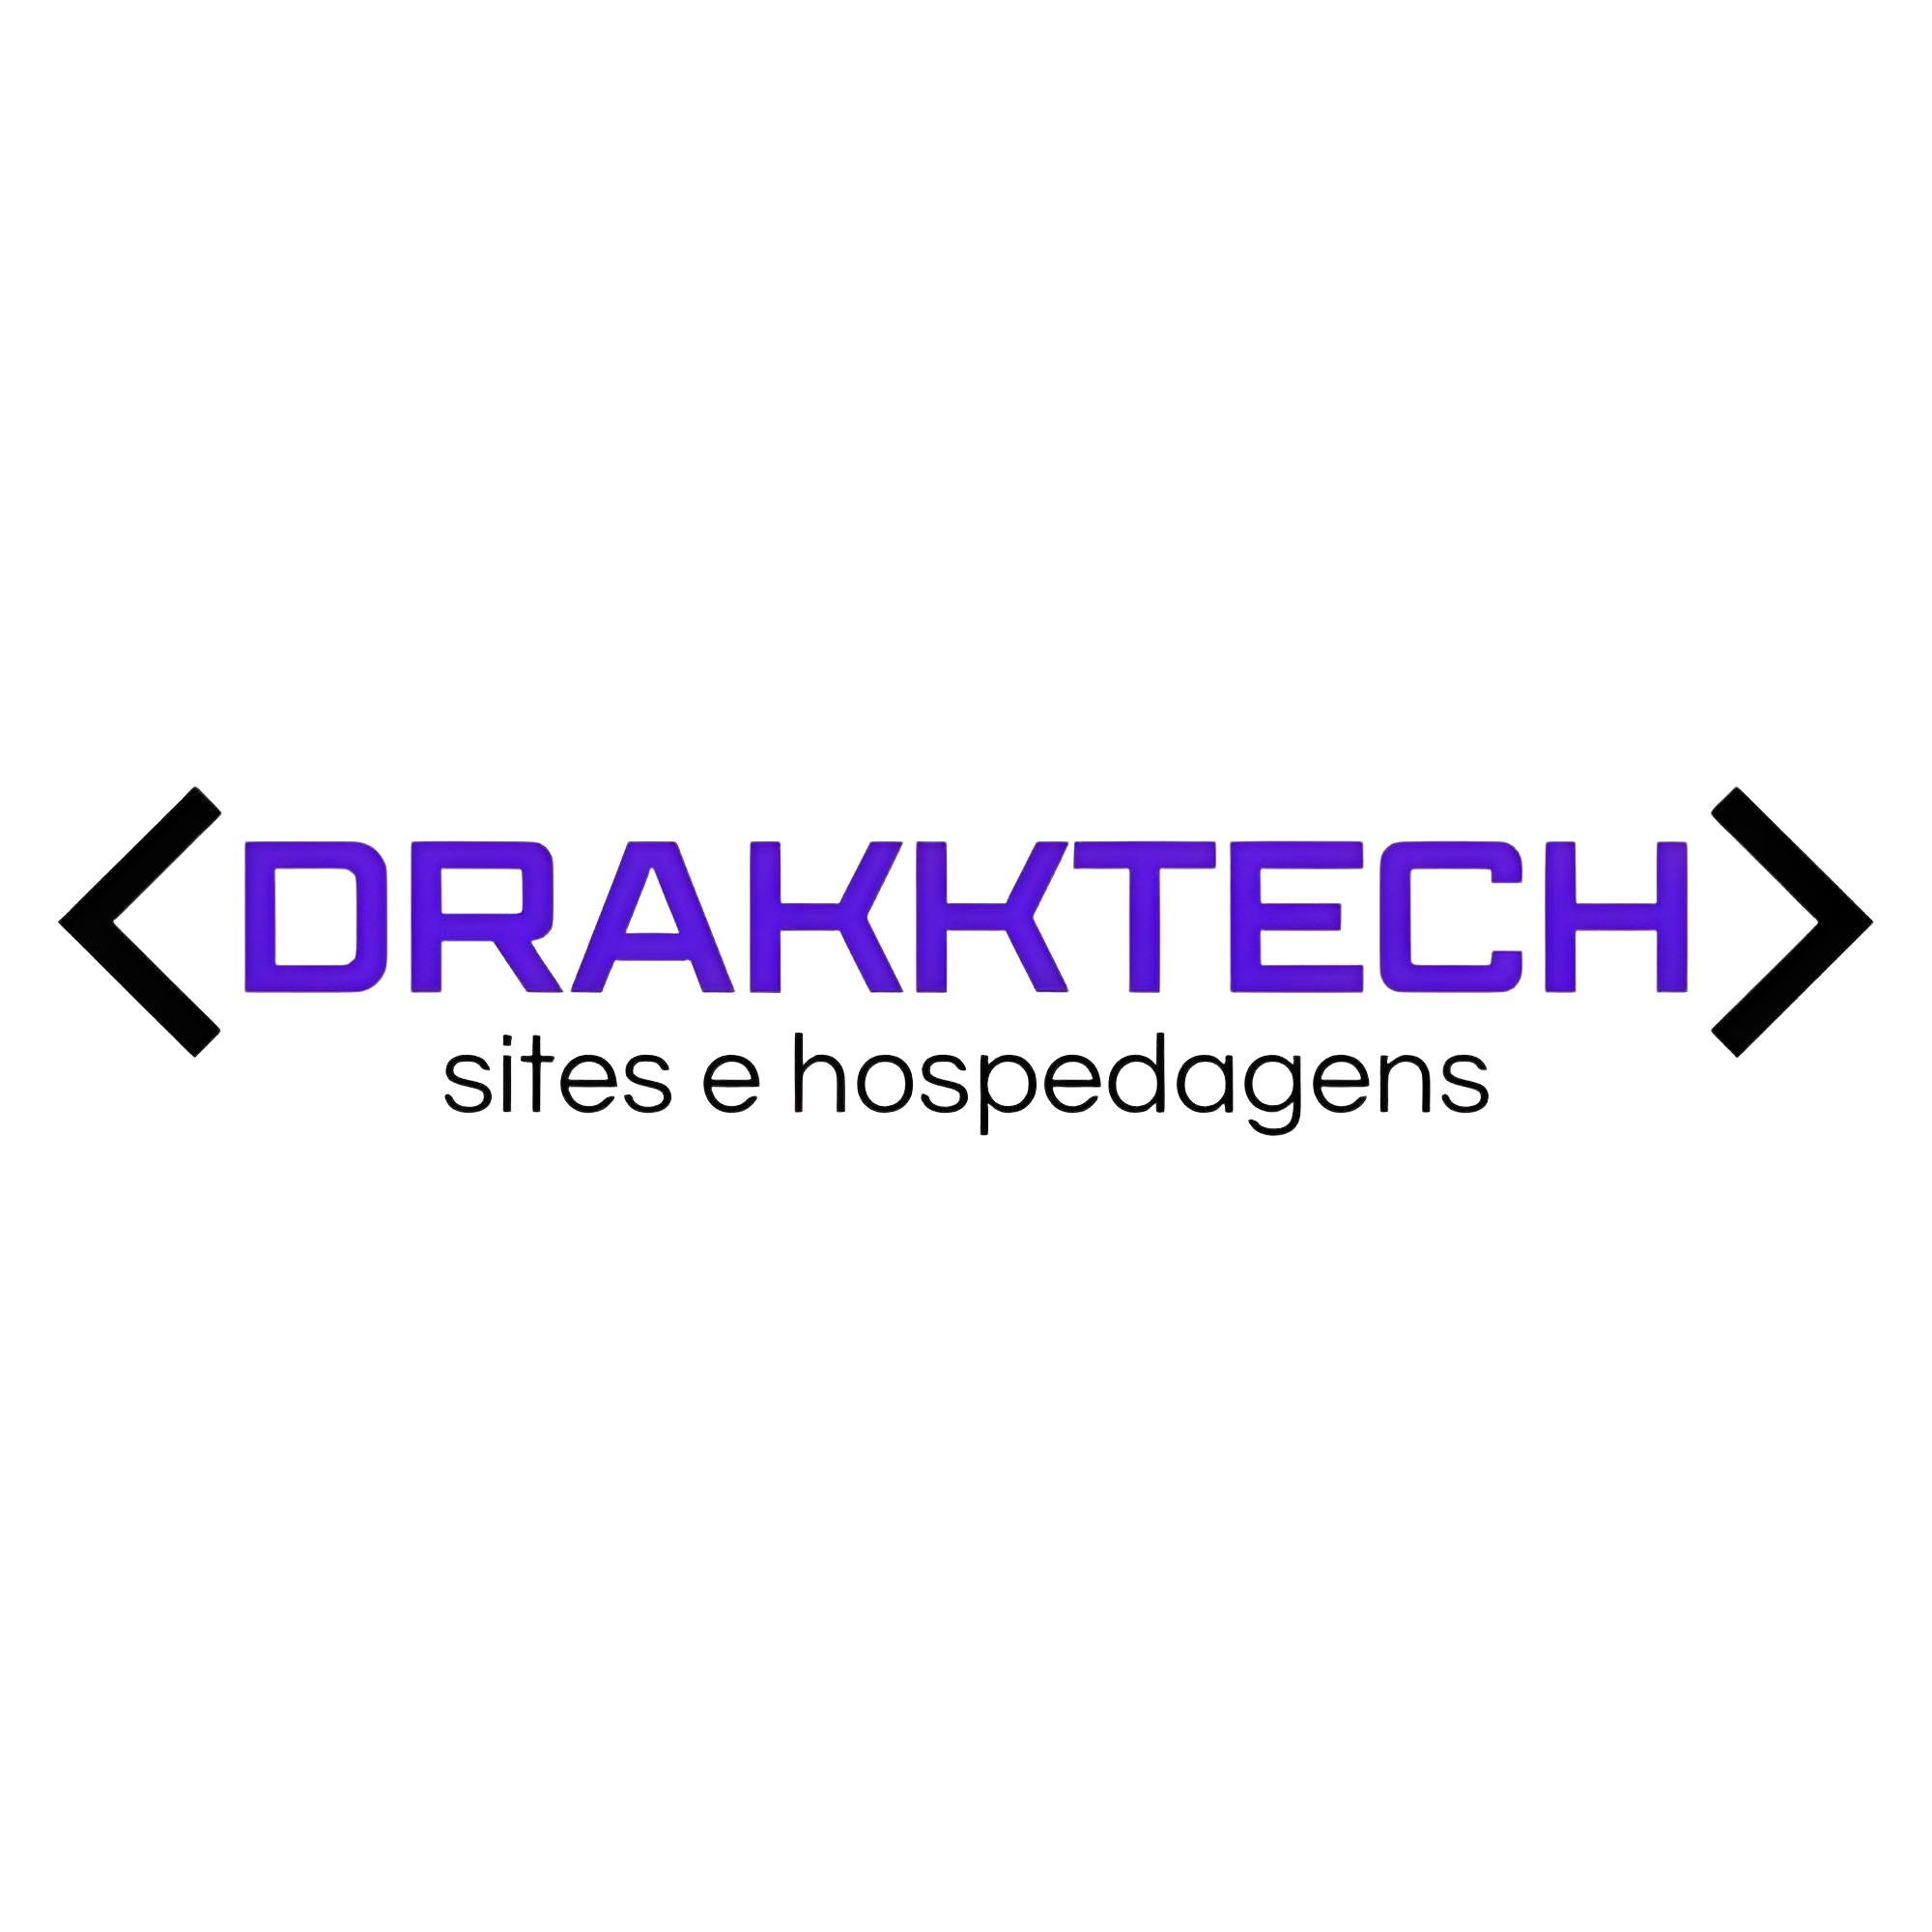 DrakkTech